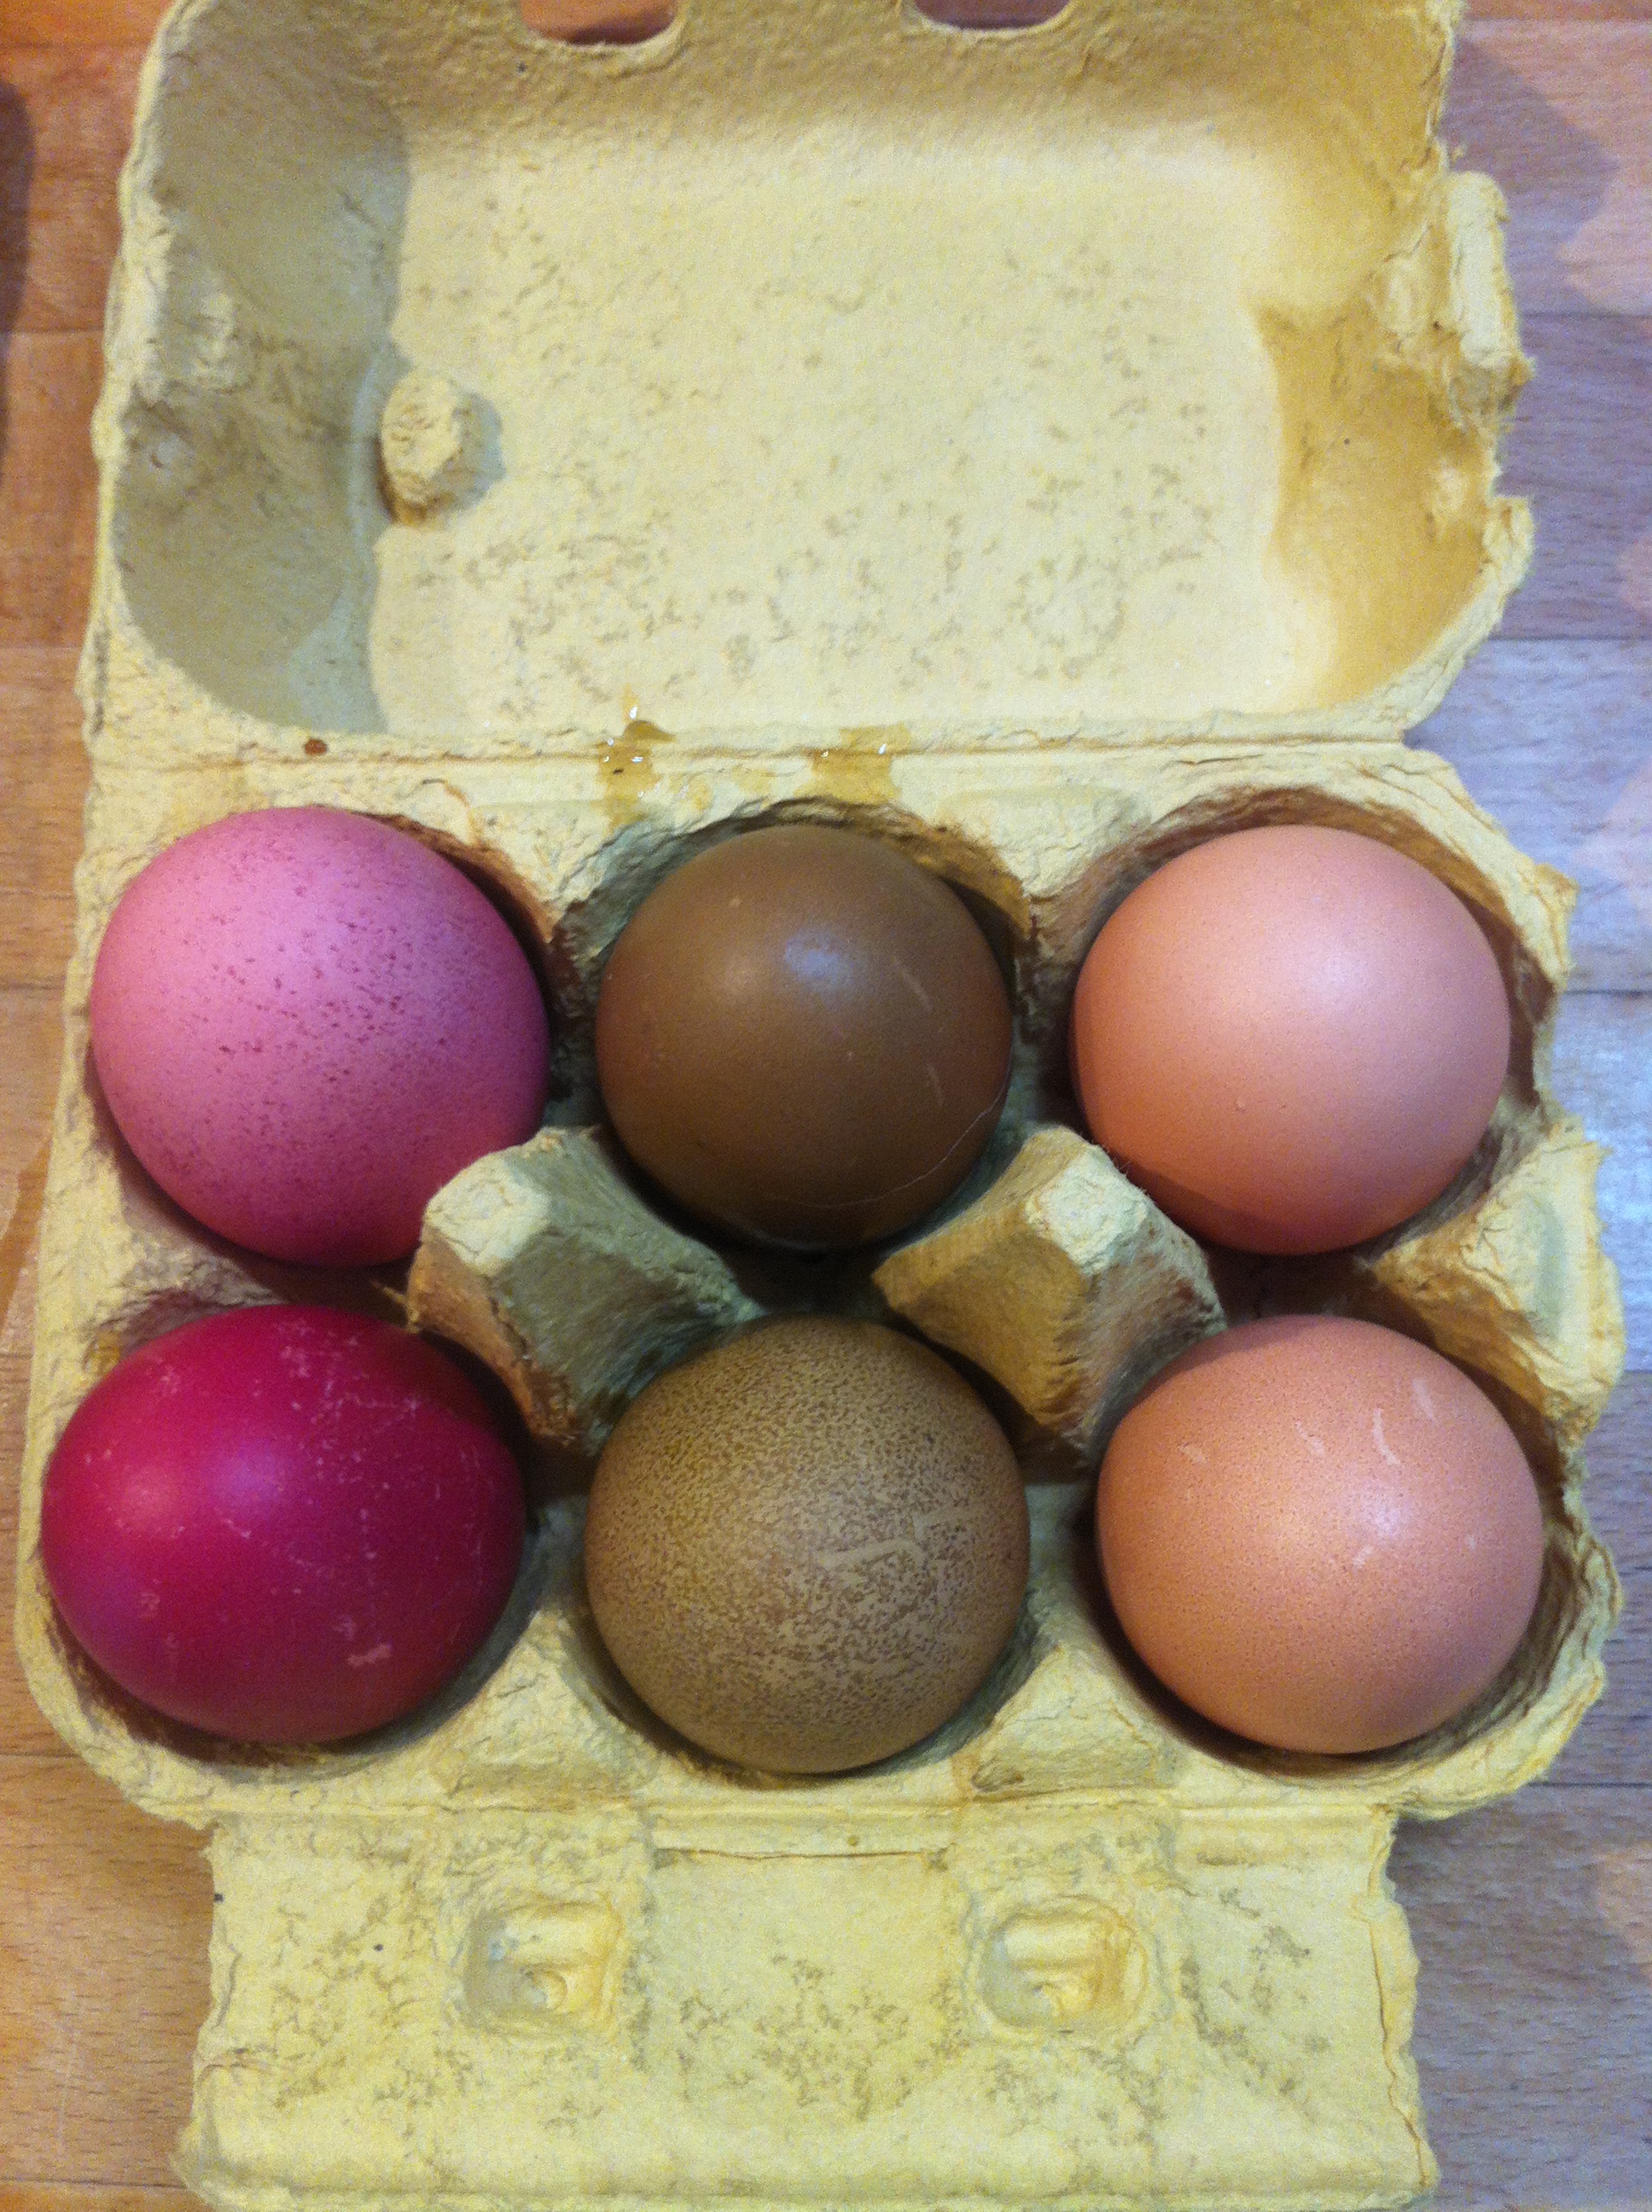 Braune Eier gefärbt mit nawaro Natur Eierfarben - zwei von fünf

Rechts das braune Original Ei ohne Färbung